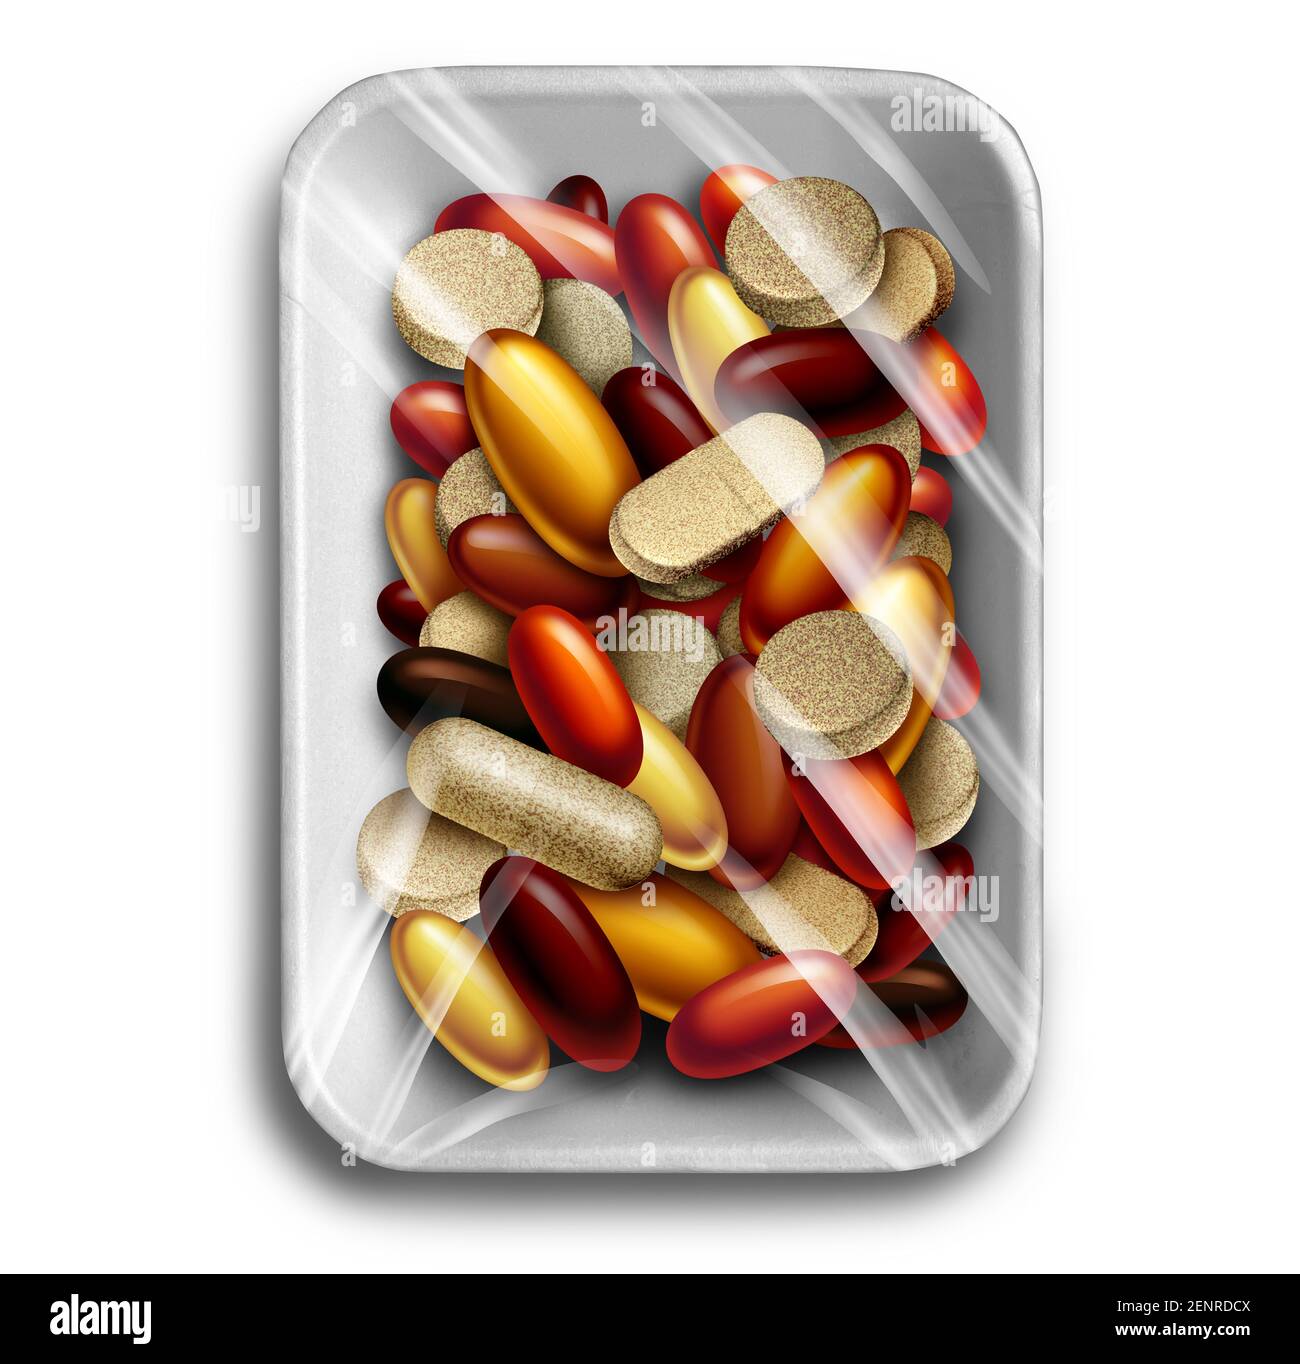 Integratori per la salute e integratori alimentari vitaminici come vassoio in polistirene avvolto con un gruppo di capsule e pillole come una medicina naturale nutriente. Foto Stock